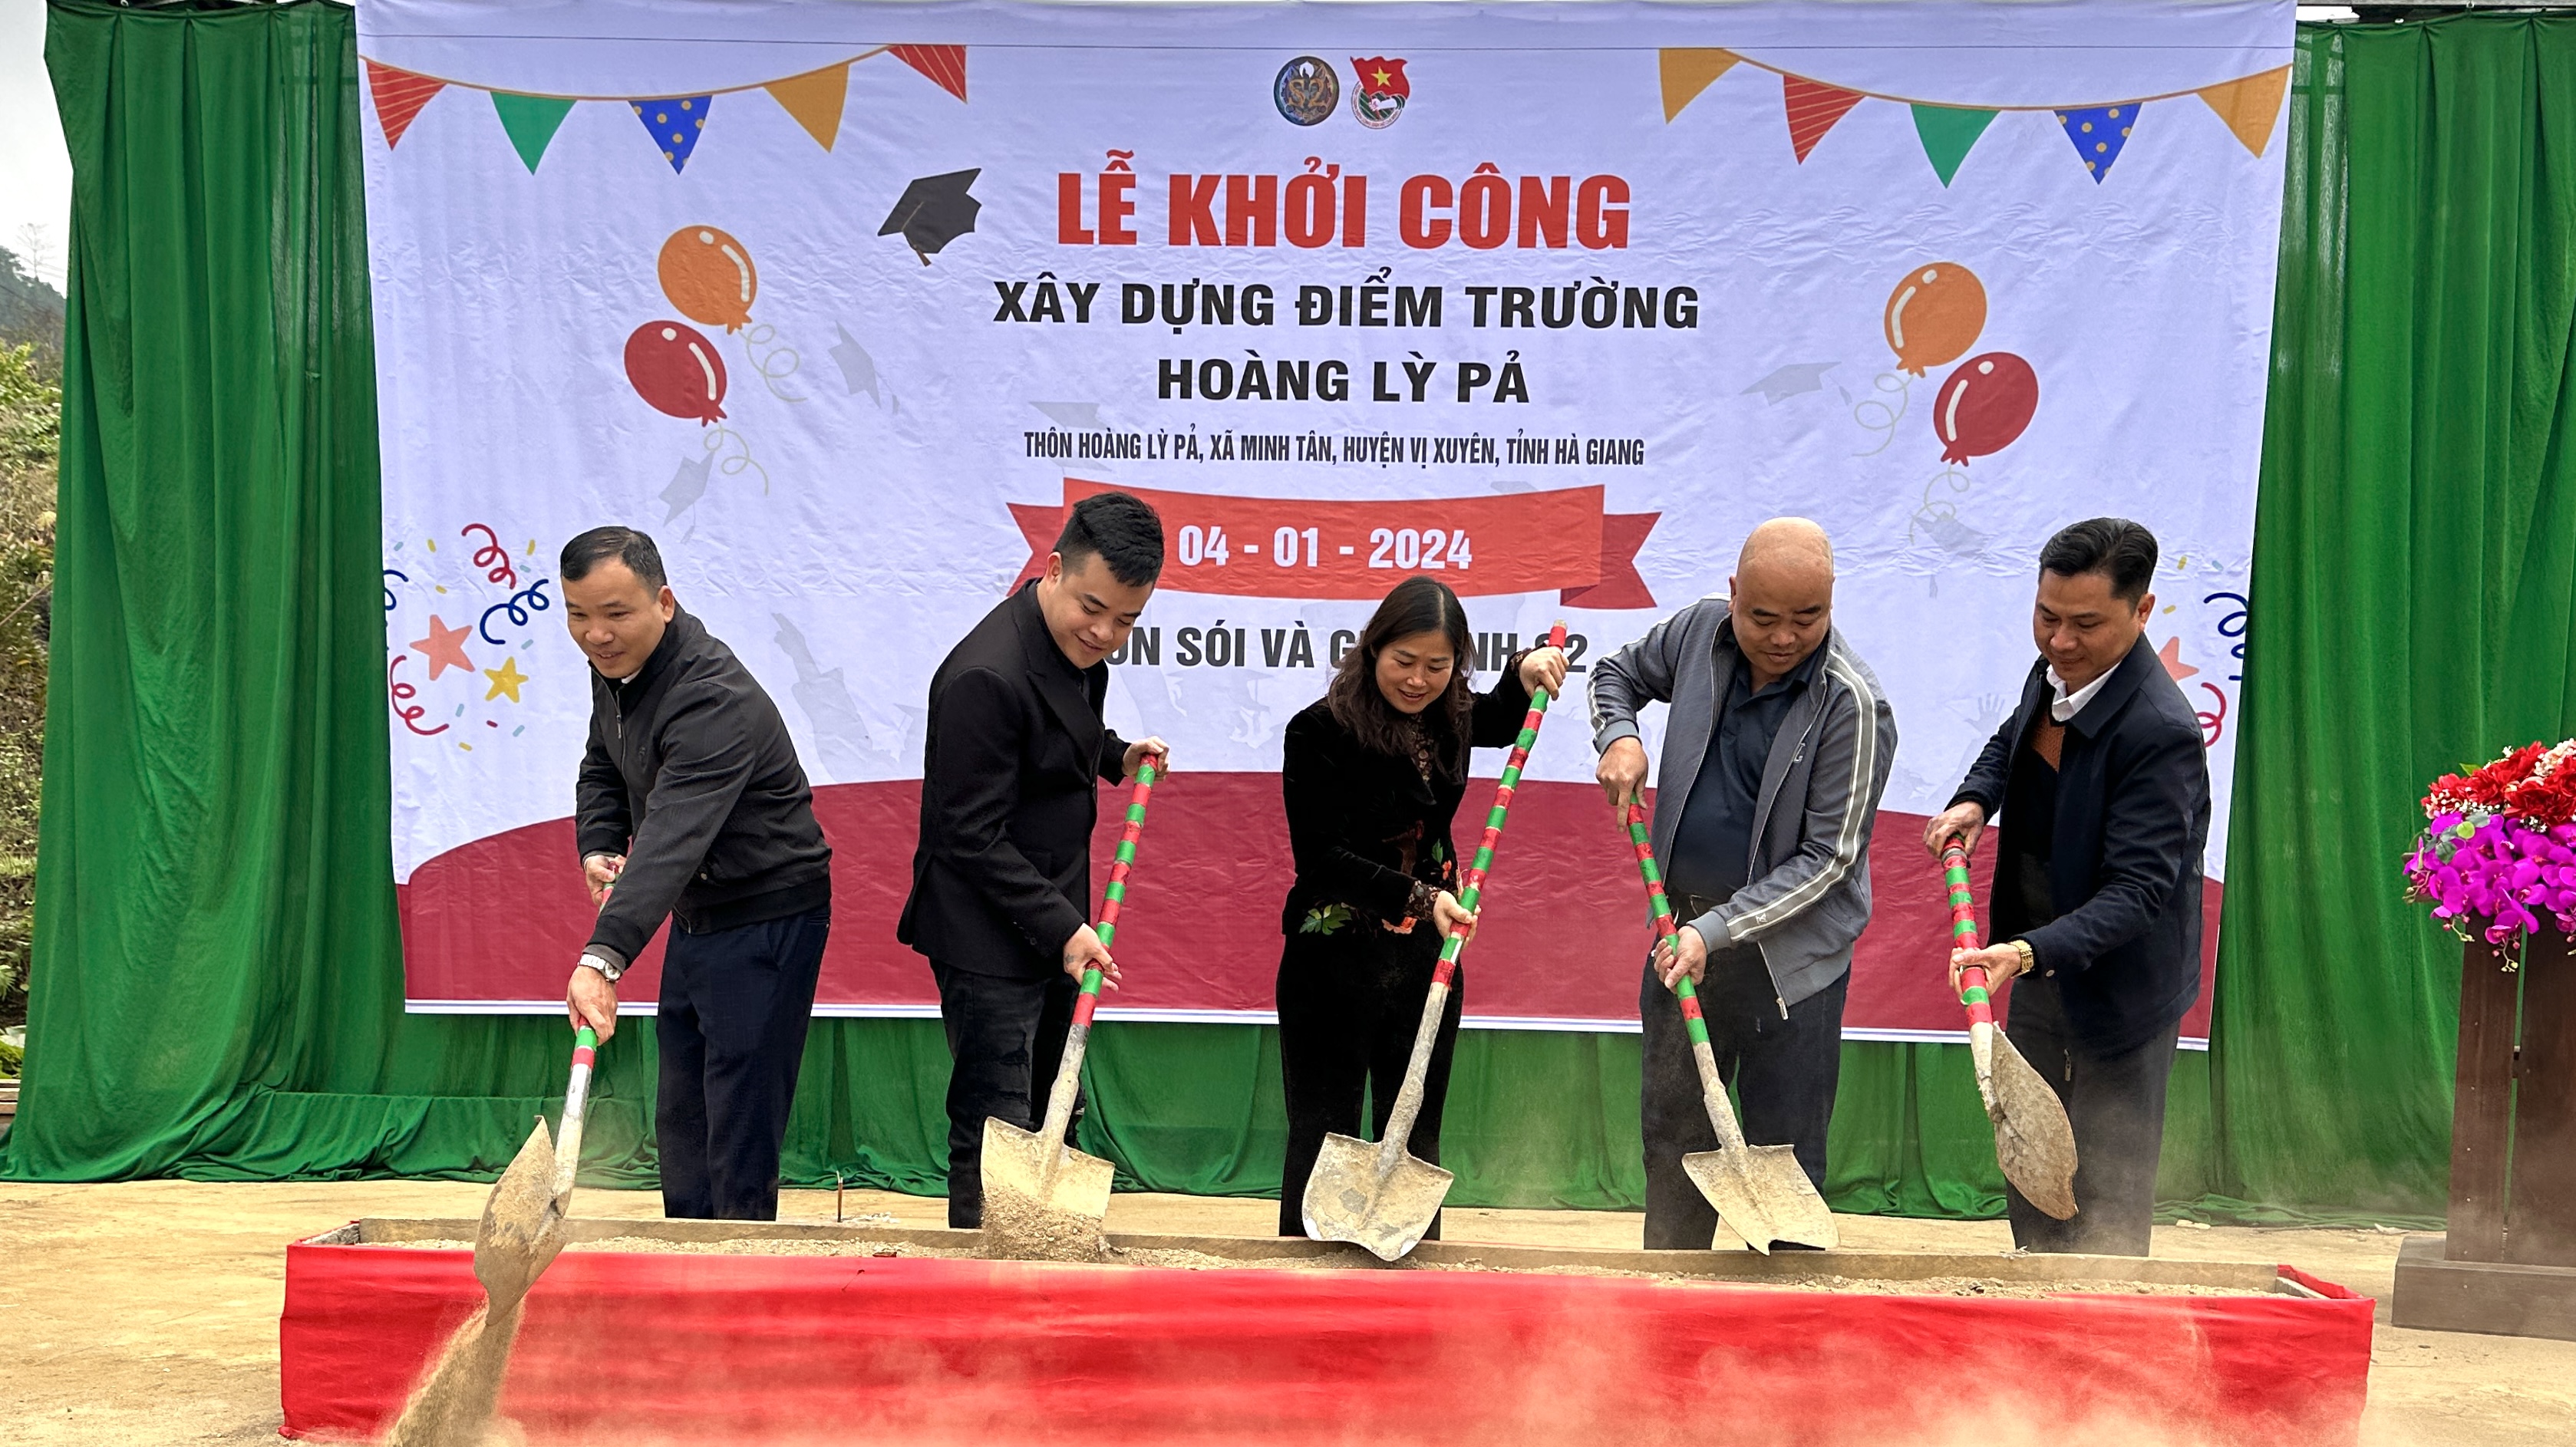 Lễ khởi công xây dựng điểm trường Hoàng Lỳ Pả, xã Minh Tân, huyện Vị Xuyên